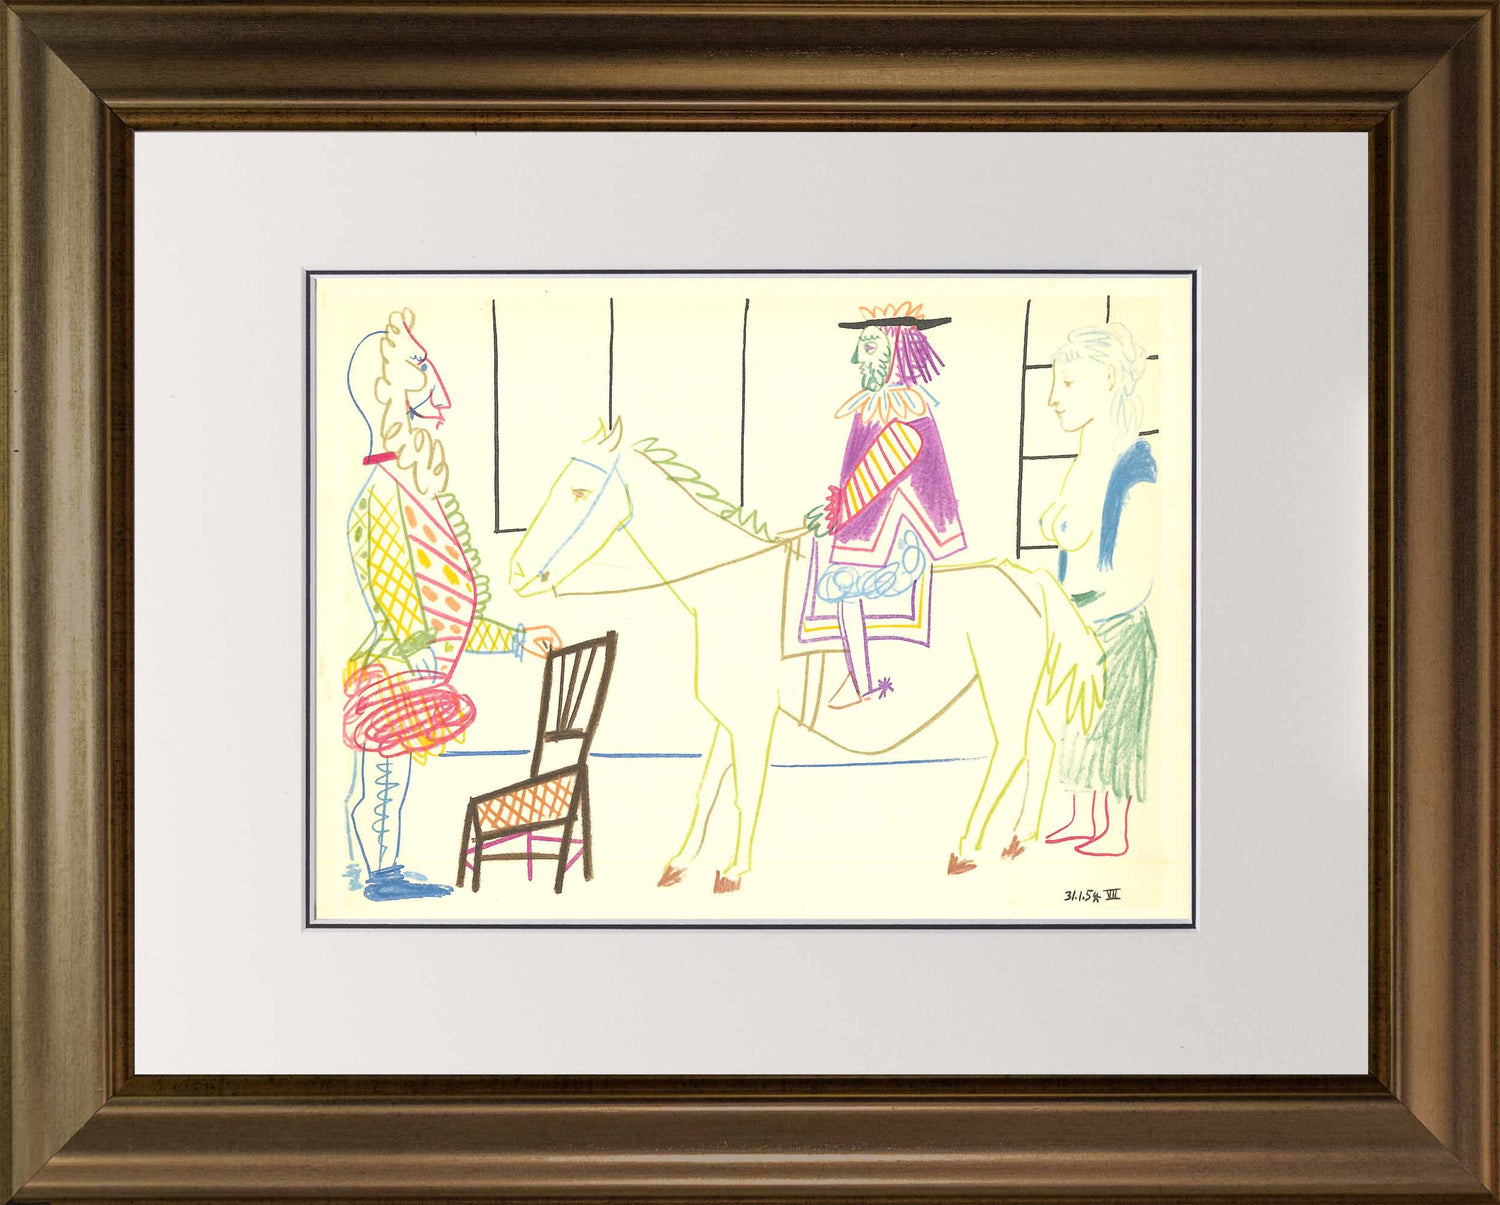 Pablo Picasso "Human Comedy" Verve Edition: Vol. 8 No 29 Frame